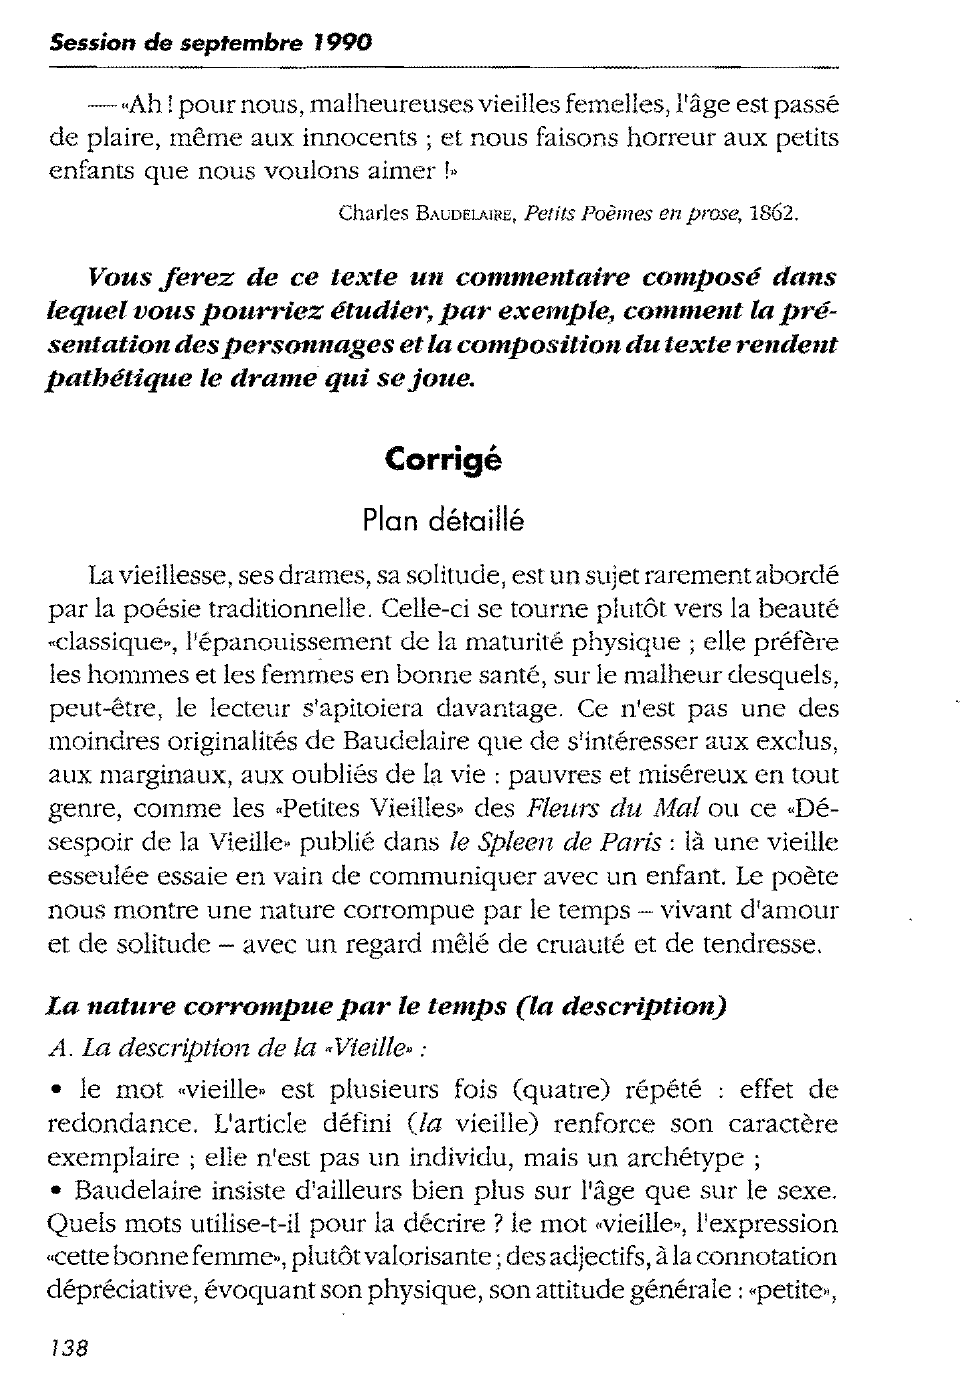 Prévisualisation du document Charles Baudelaire, Petits Poèmes en prose — commentaire composé